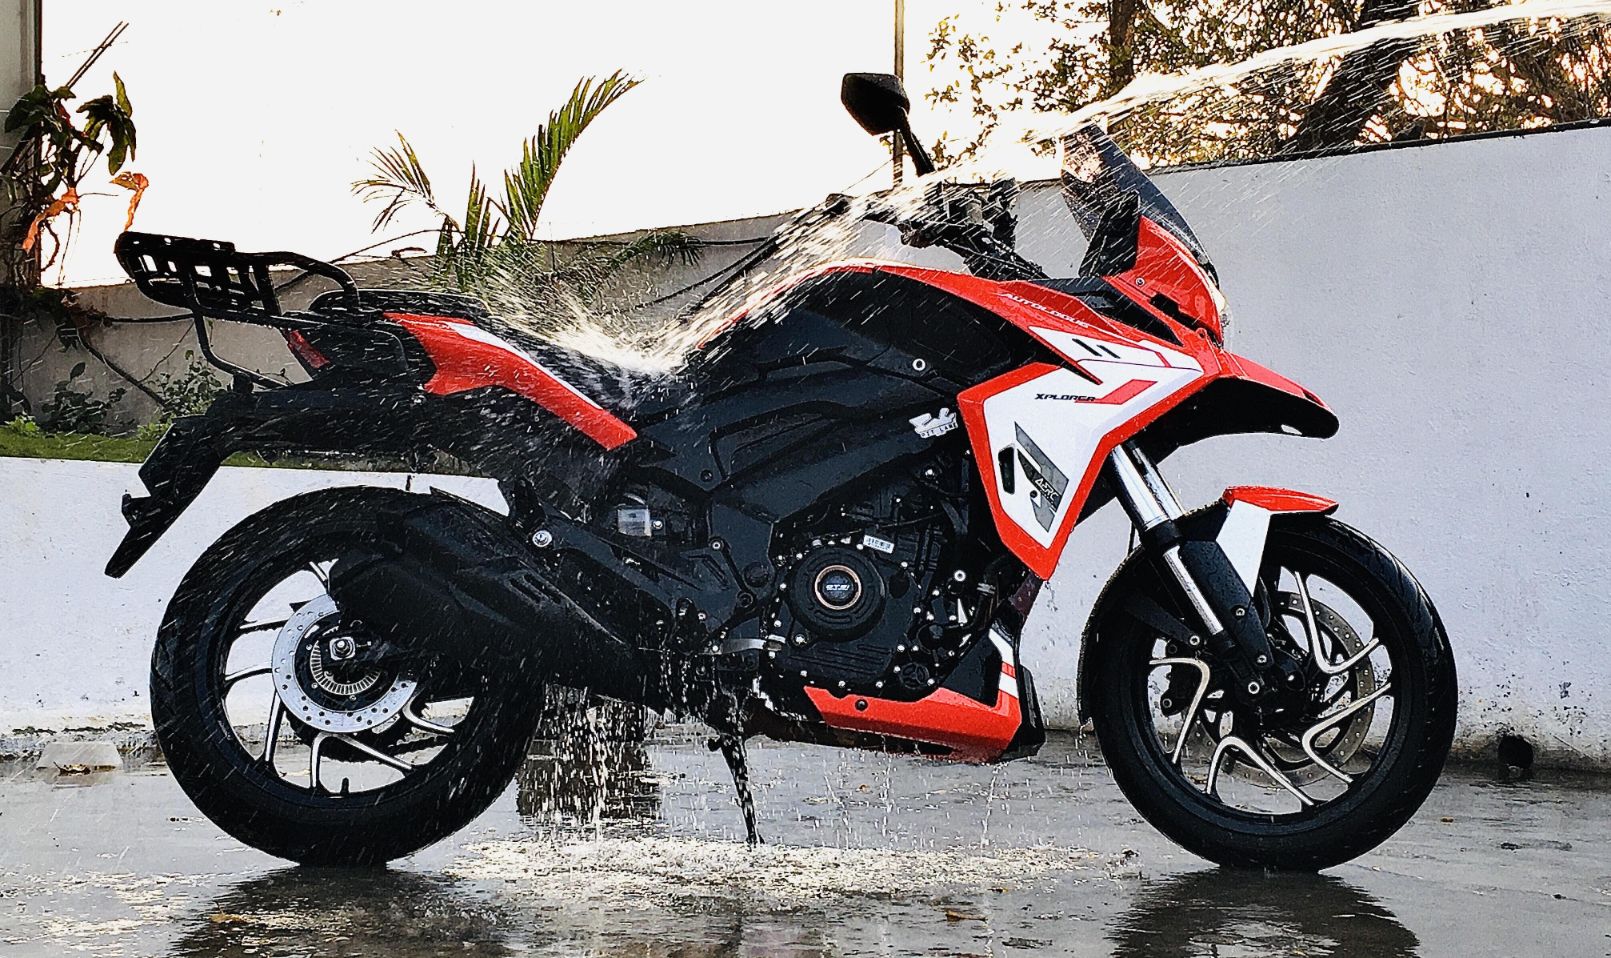 Bajaj Xplorer 400 Adventure Motorcycle Looks Mind Blowing! - macro